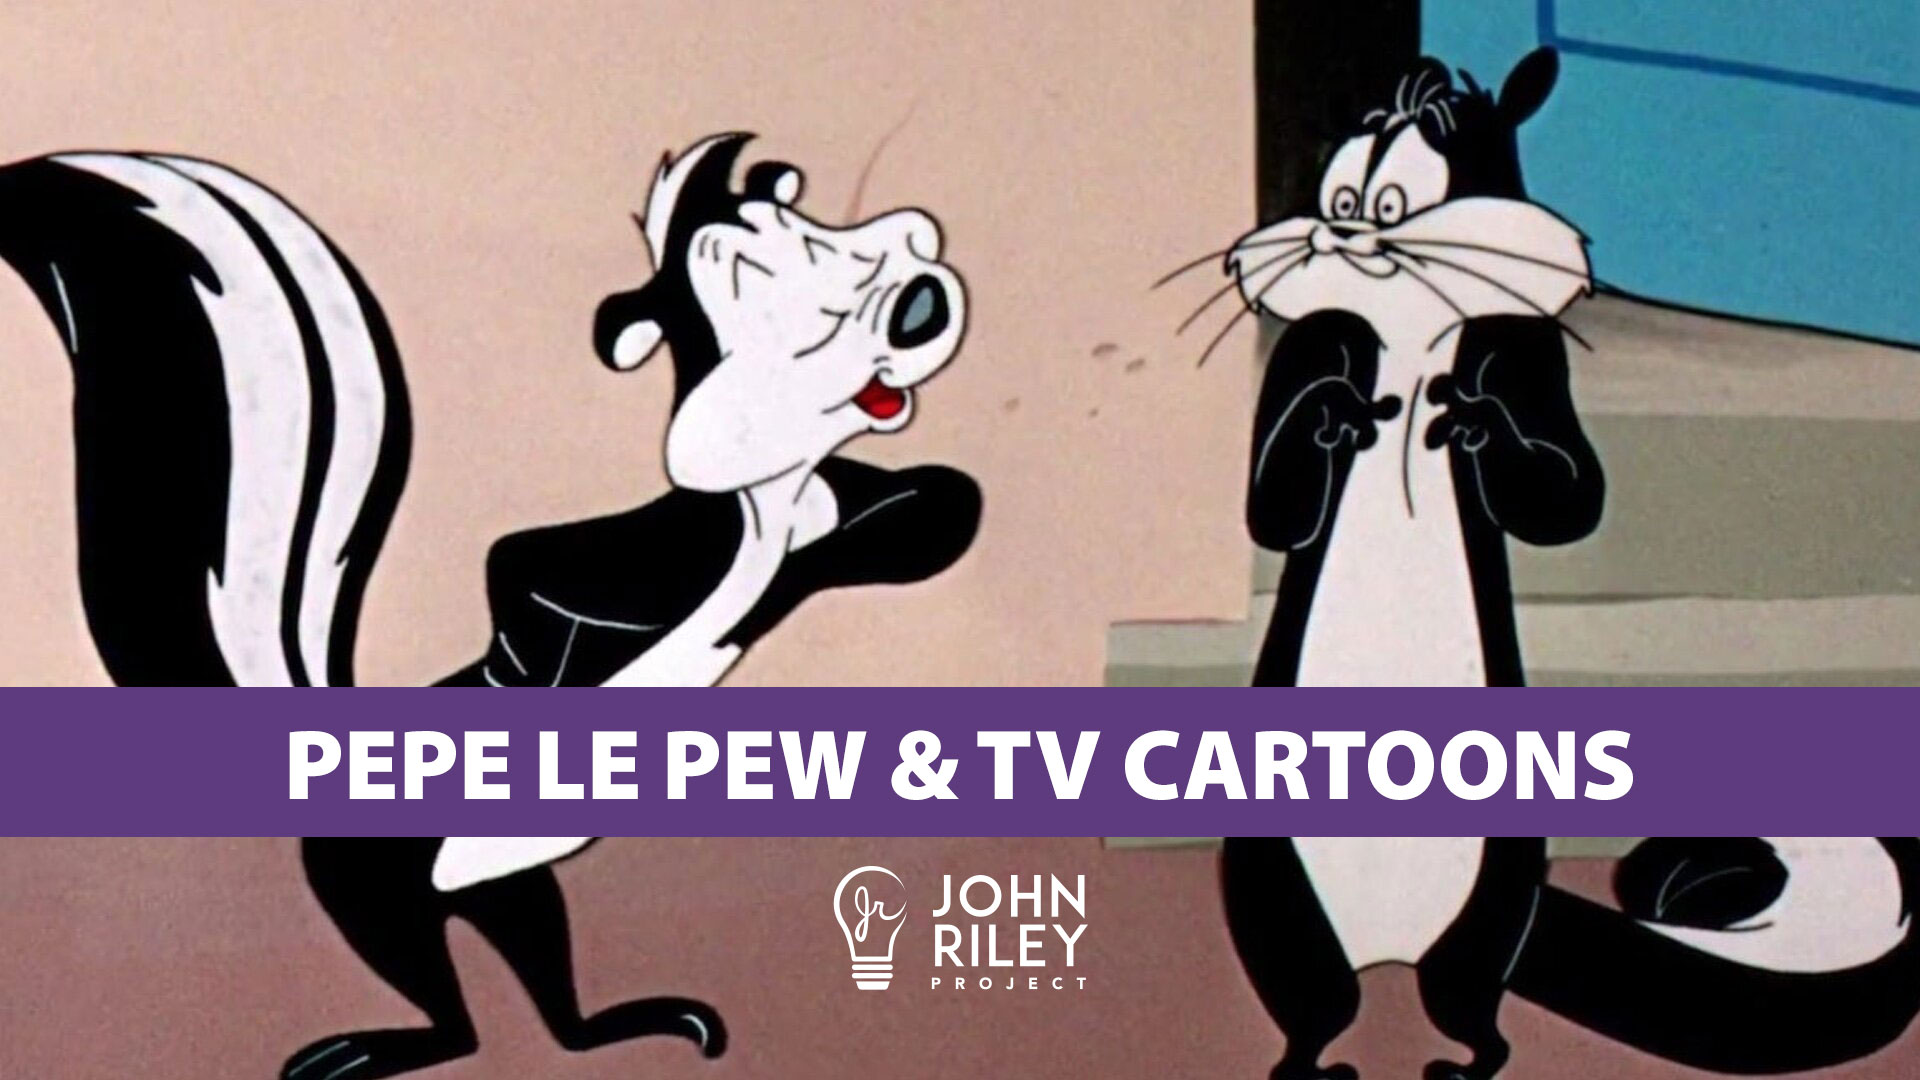 pepe le pew, saturday morning tv cartoons, john riley project, jrp0212